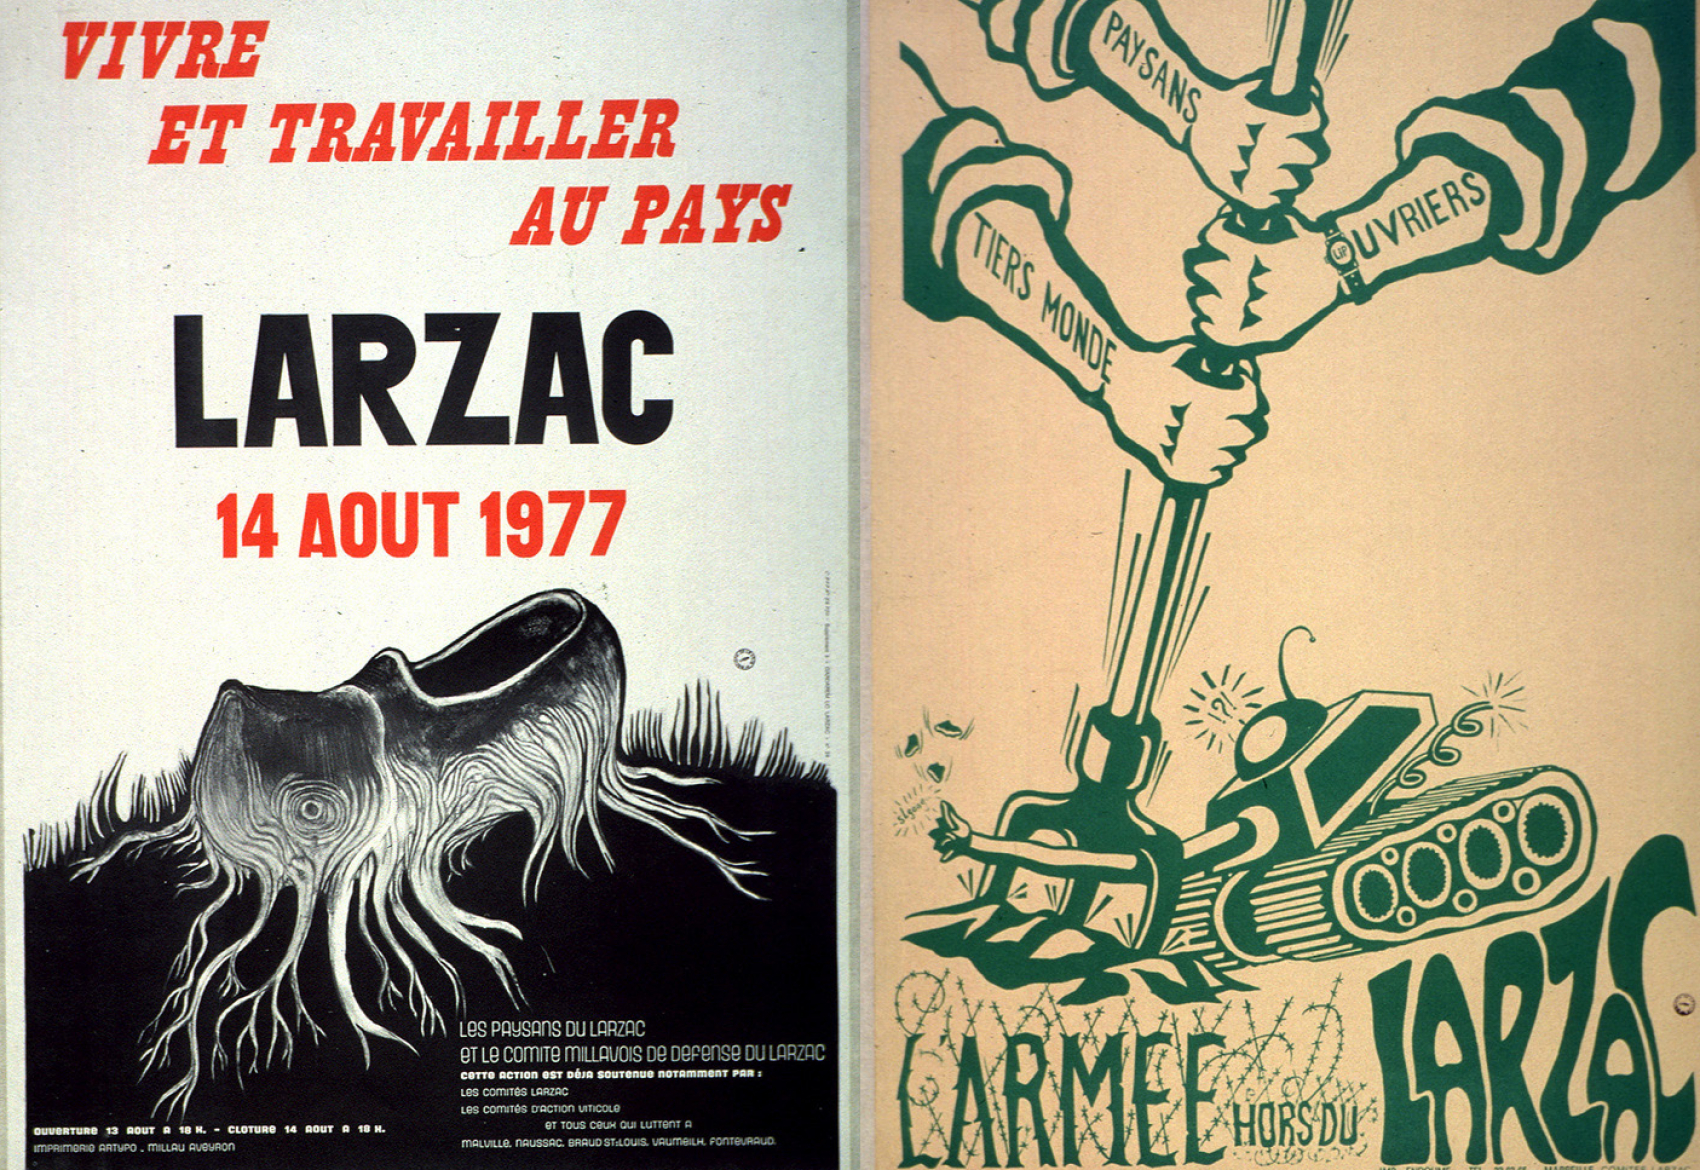 La lutte du Larzac est un mouvement de désobéissance civile non violent contre l’extension d’un camp militaire (1971-1981). Elle s'est soldée par l’abandon du projet sur décision de François Mitterrand.